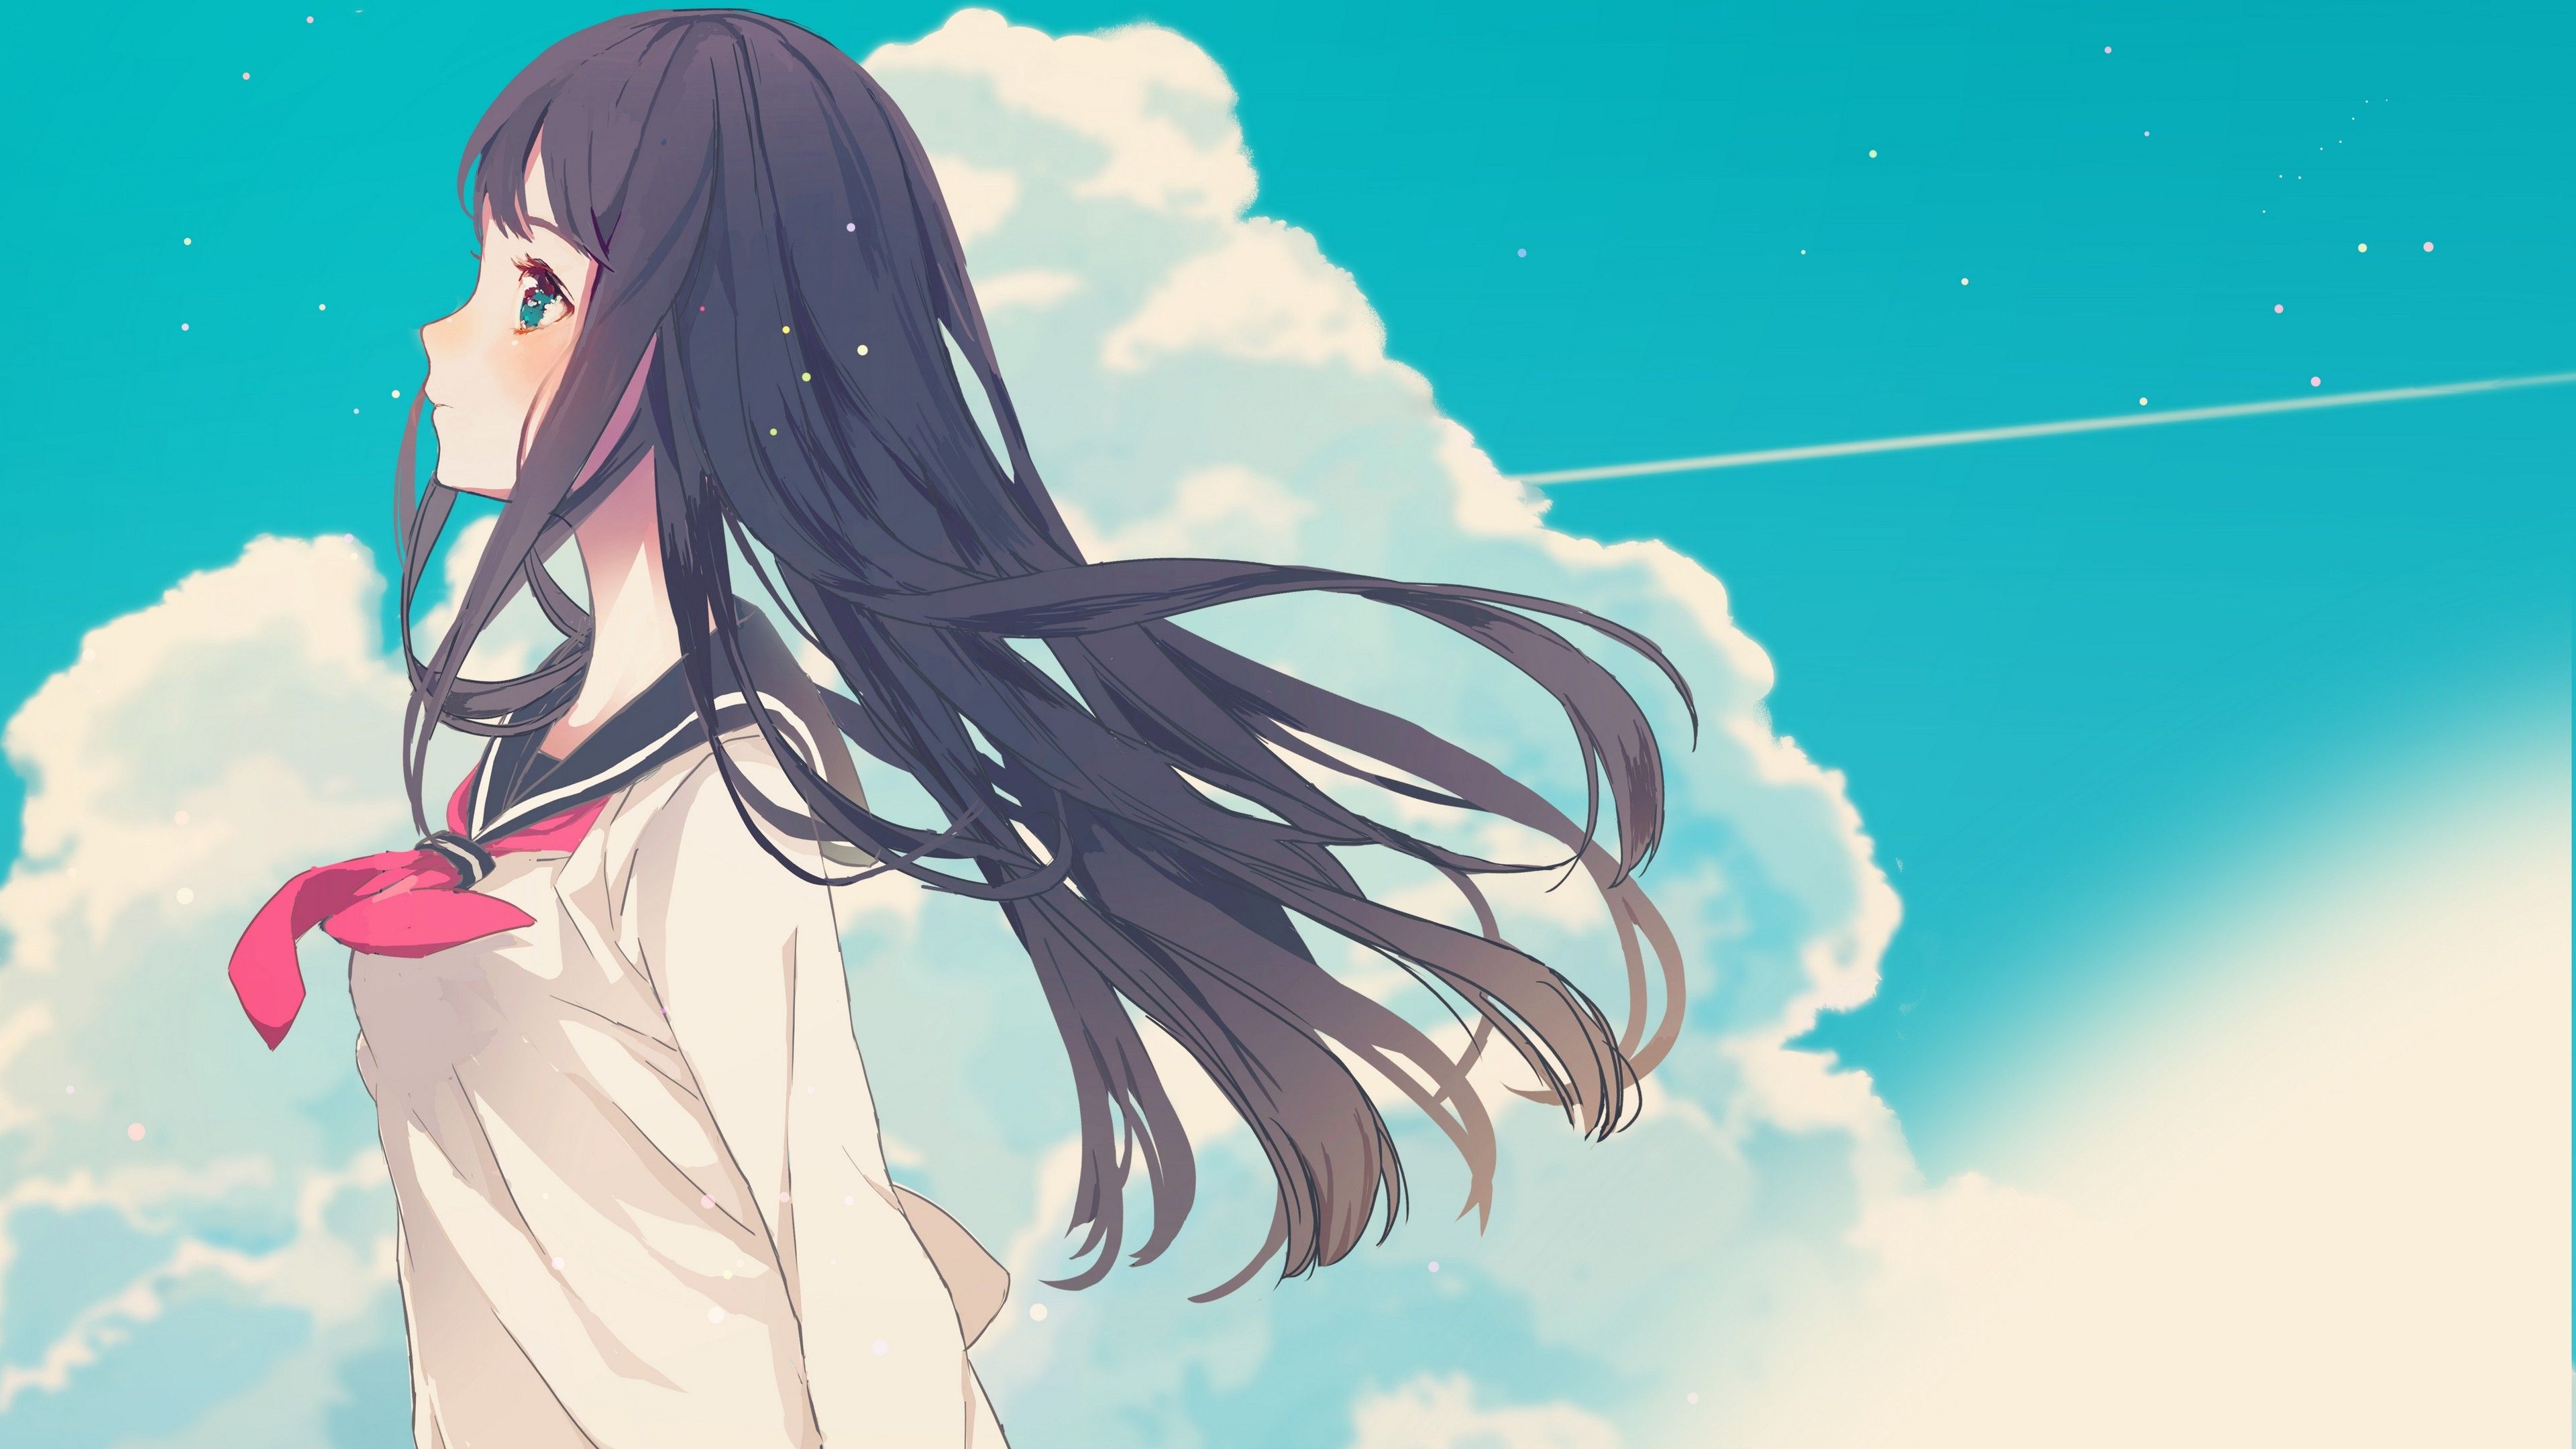 #blushing, #sky, #long hair, #clouds, #anime girls